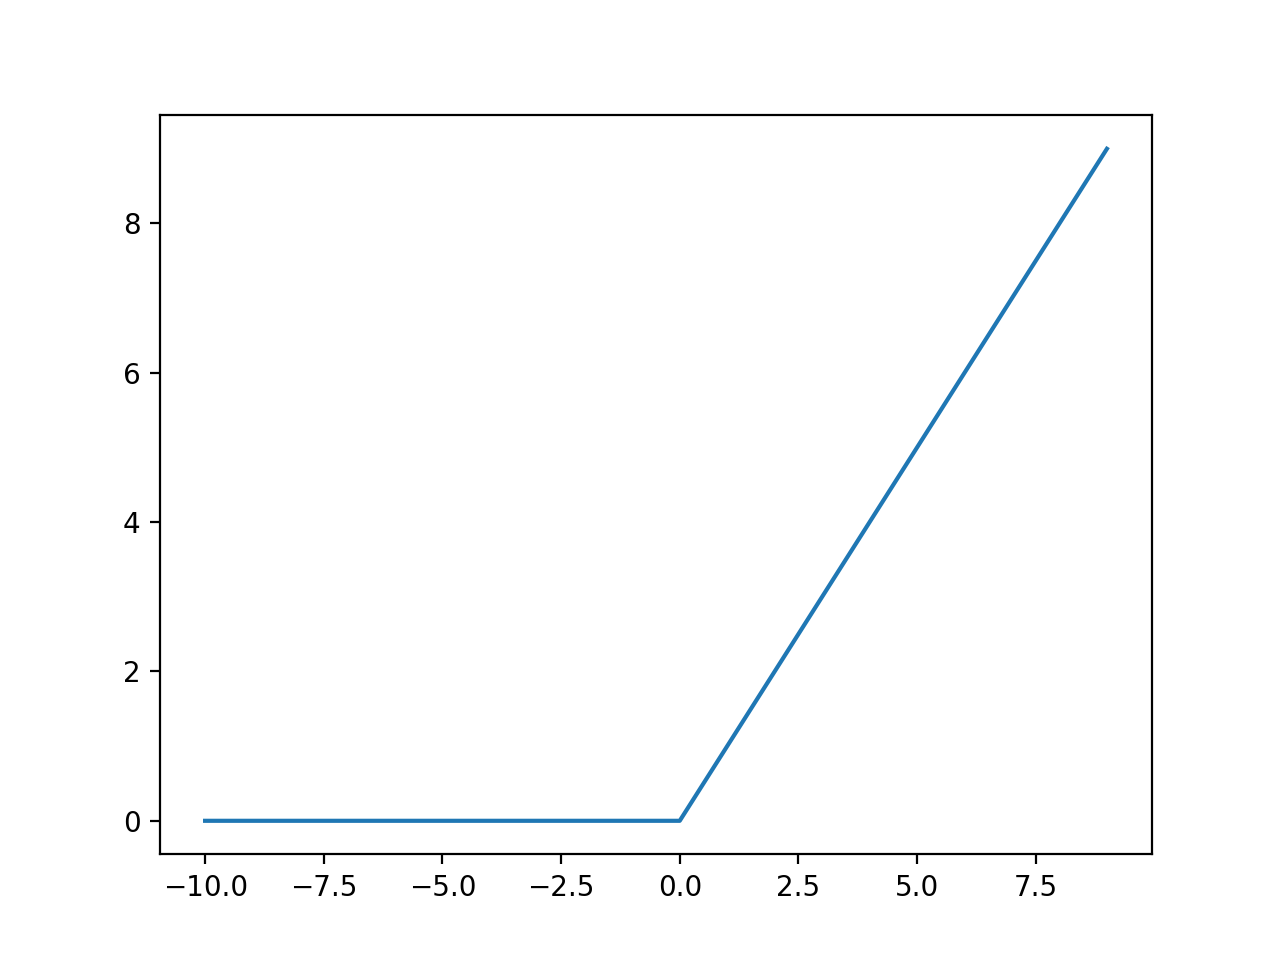 Gráfico de entradas frente a salidas para la función de activación de ReLU.